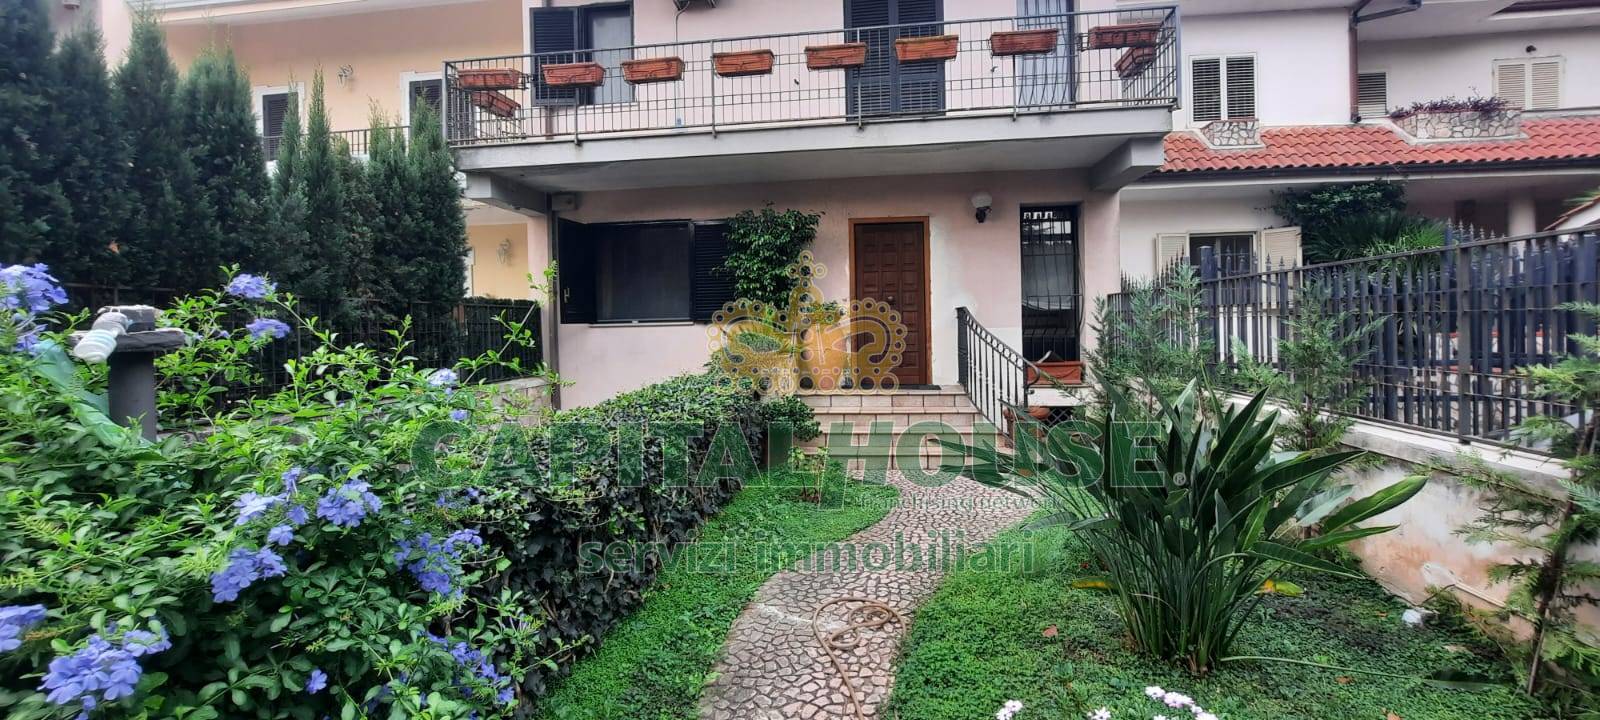 Villa a Schiera in vendita a Caserta, 8 locali, zona le, prezzo € 428.000 | PortaleAgenzieImmobiliari.it